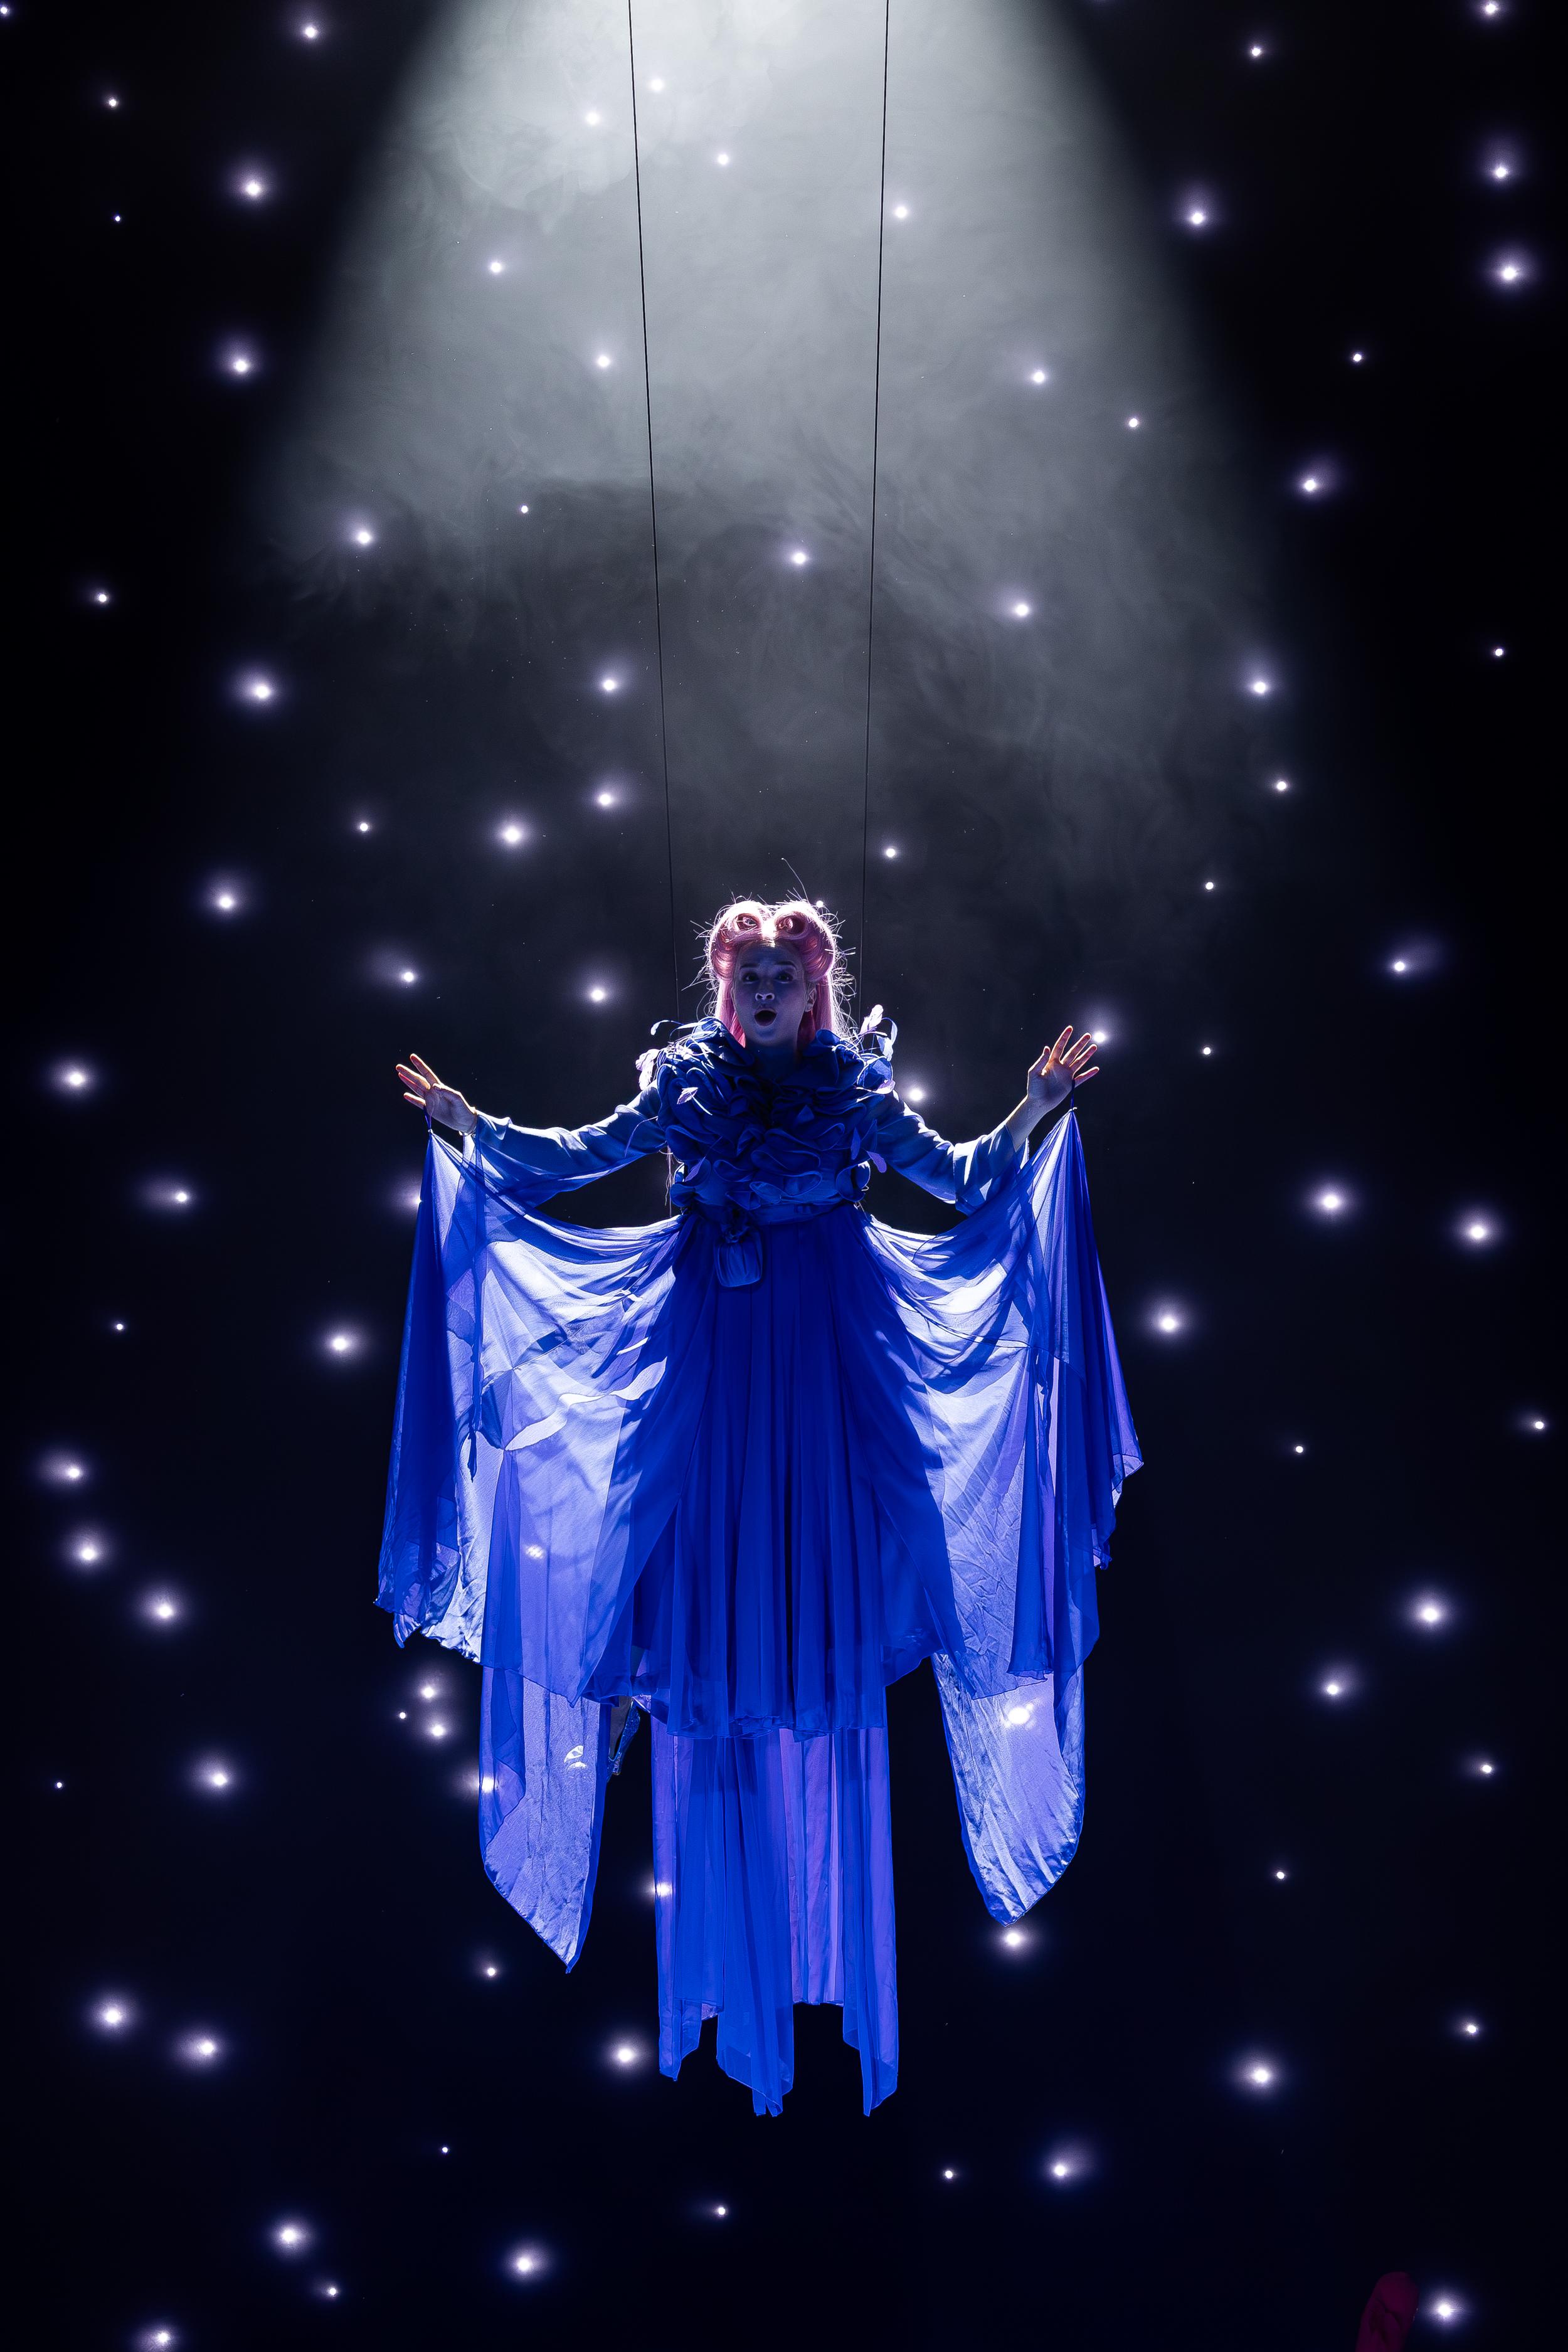 La fée marraine  (Emma Delannoy) dans "Cendrillon" de Pauline Viardot mise en scène par Gilles Rico. [Opéra de Lausanne - Cyril Zingaro]